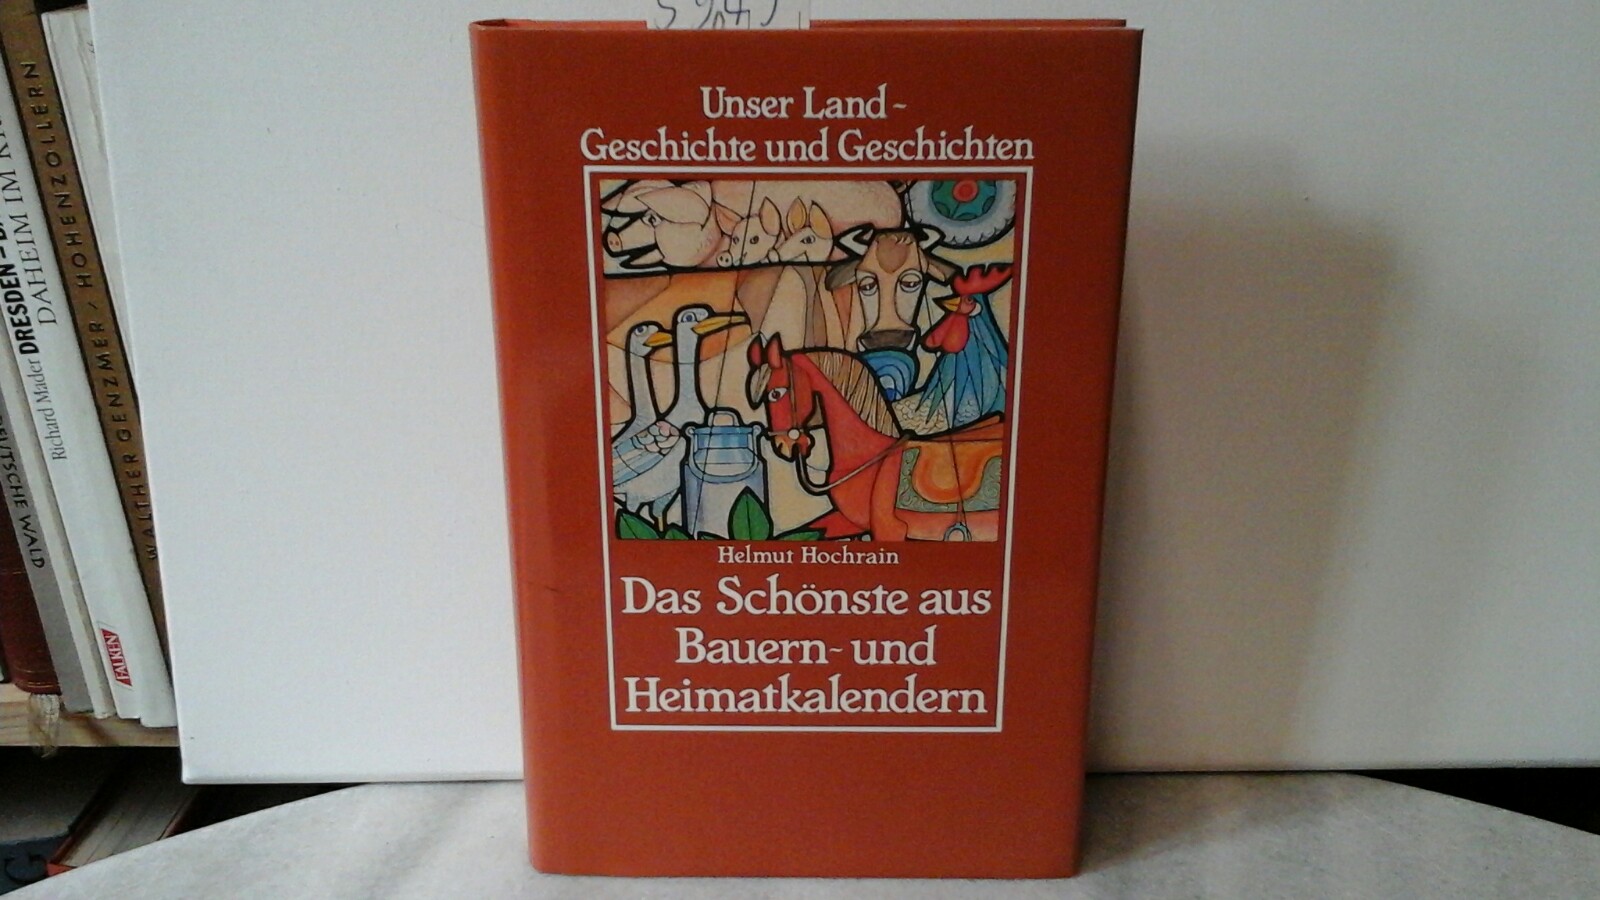 HOCHRAIN, HELMUT (Hrsg.): Das Schnste aus Bauern- und Heimatkalendern. Unser Land - Geschichte u. Geschichten. Herausgegeben von Helmut Hochrain. Erste /1./ Ausgabe.